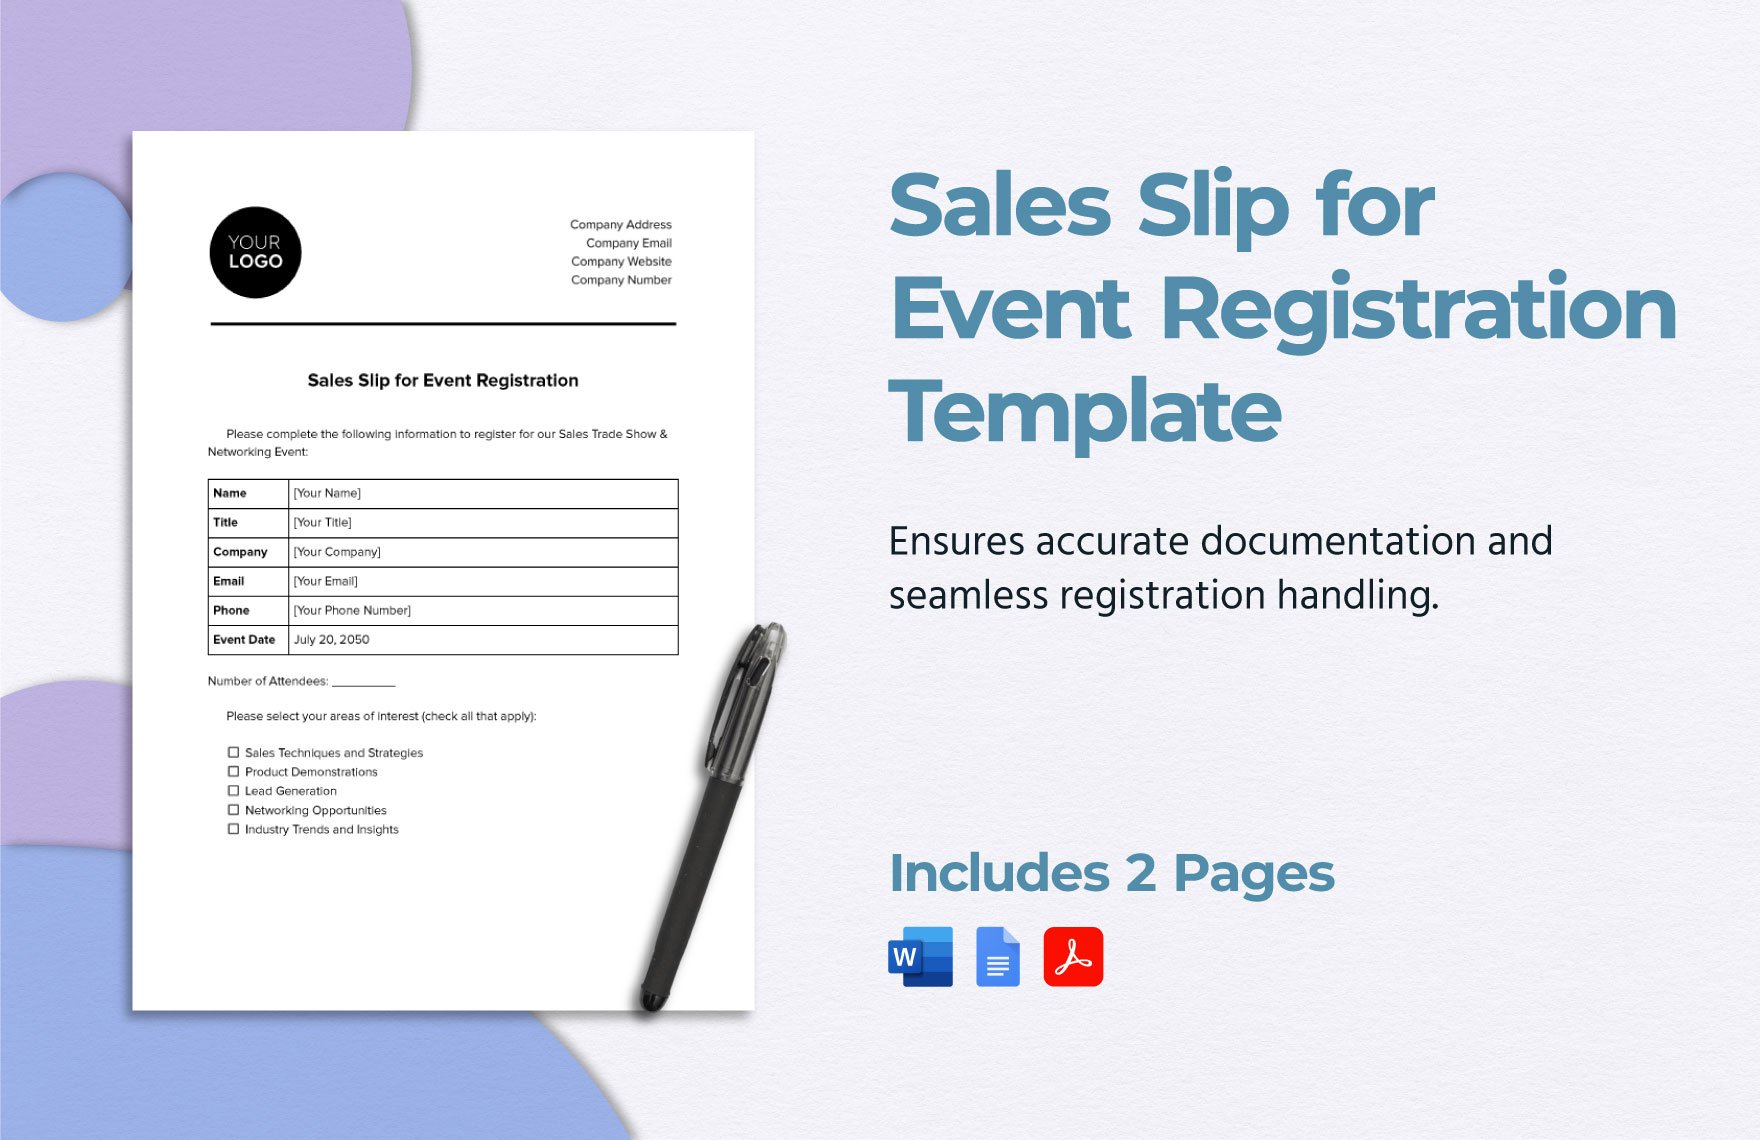 Sales Slip for Event Registration Template